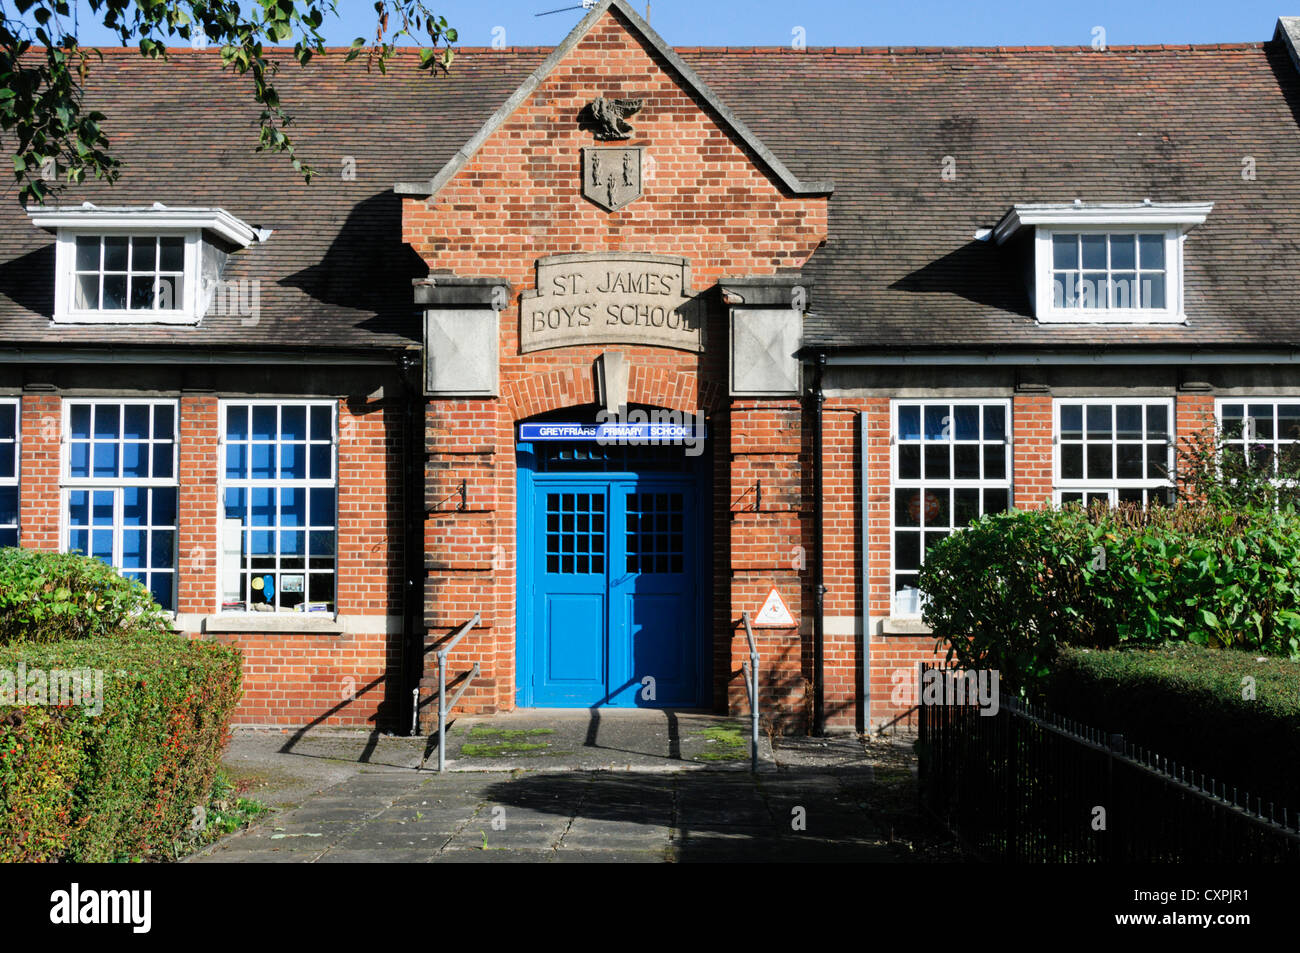 L'école primaire communautaire de Greyfriars dans le bâtiment du vieux St James' école des garçons, King's Lynn, Norfolk. Banque D'Images